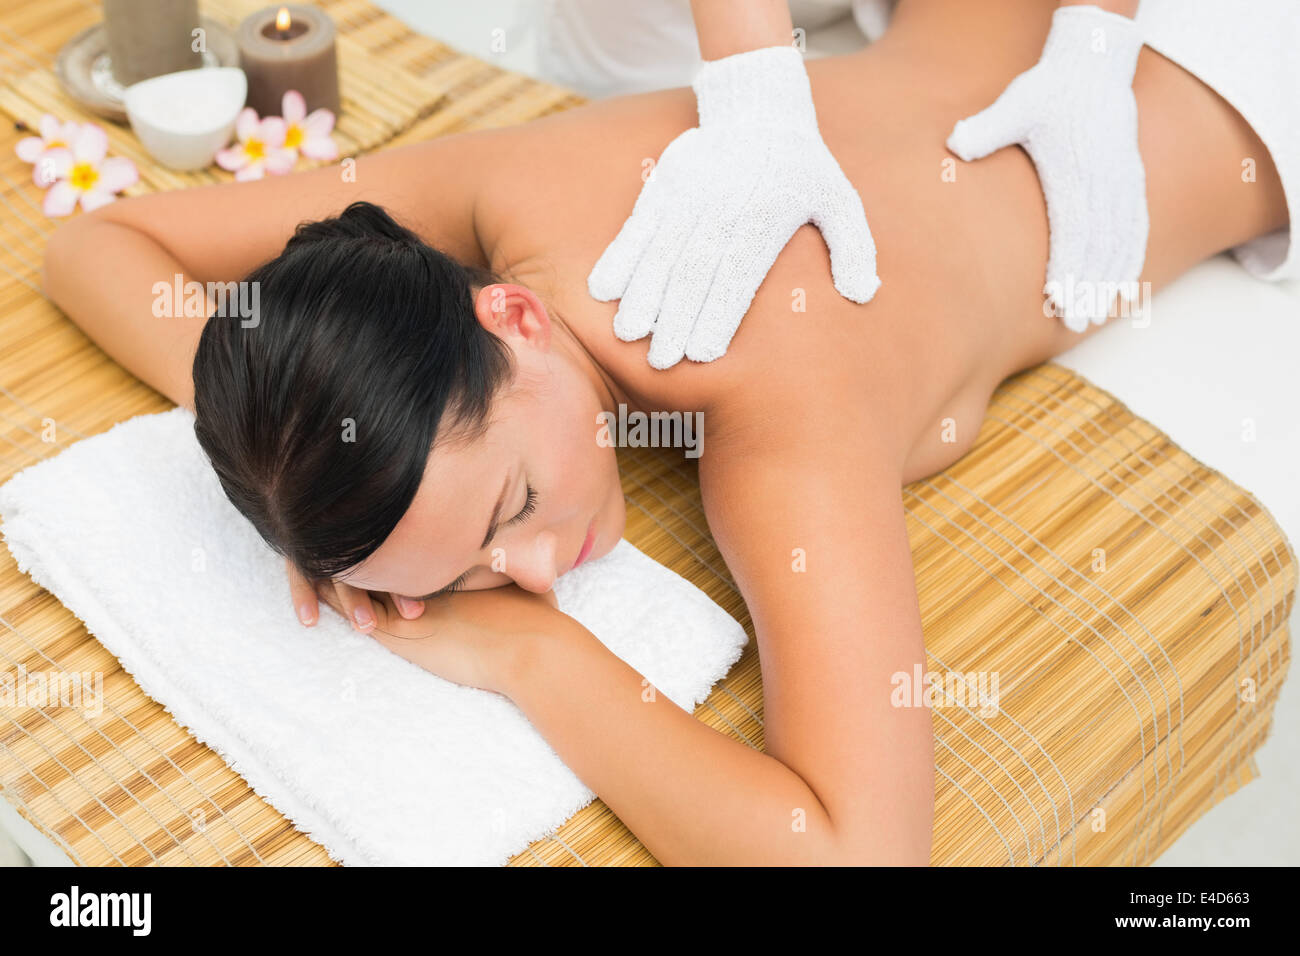 Peaceful brunette enjoying an exfoliating back massage Stock Photo